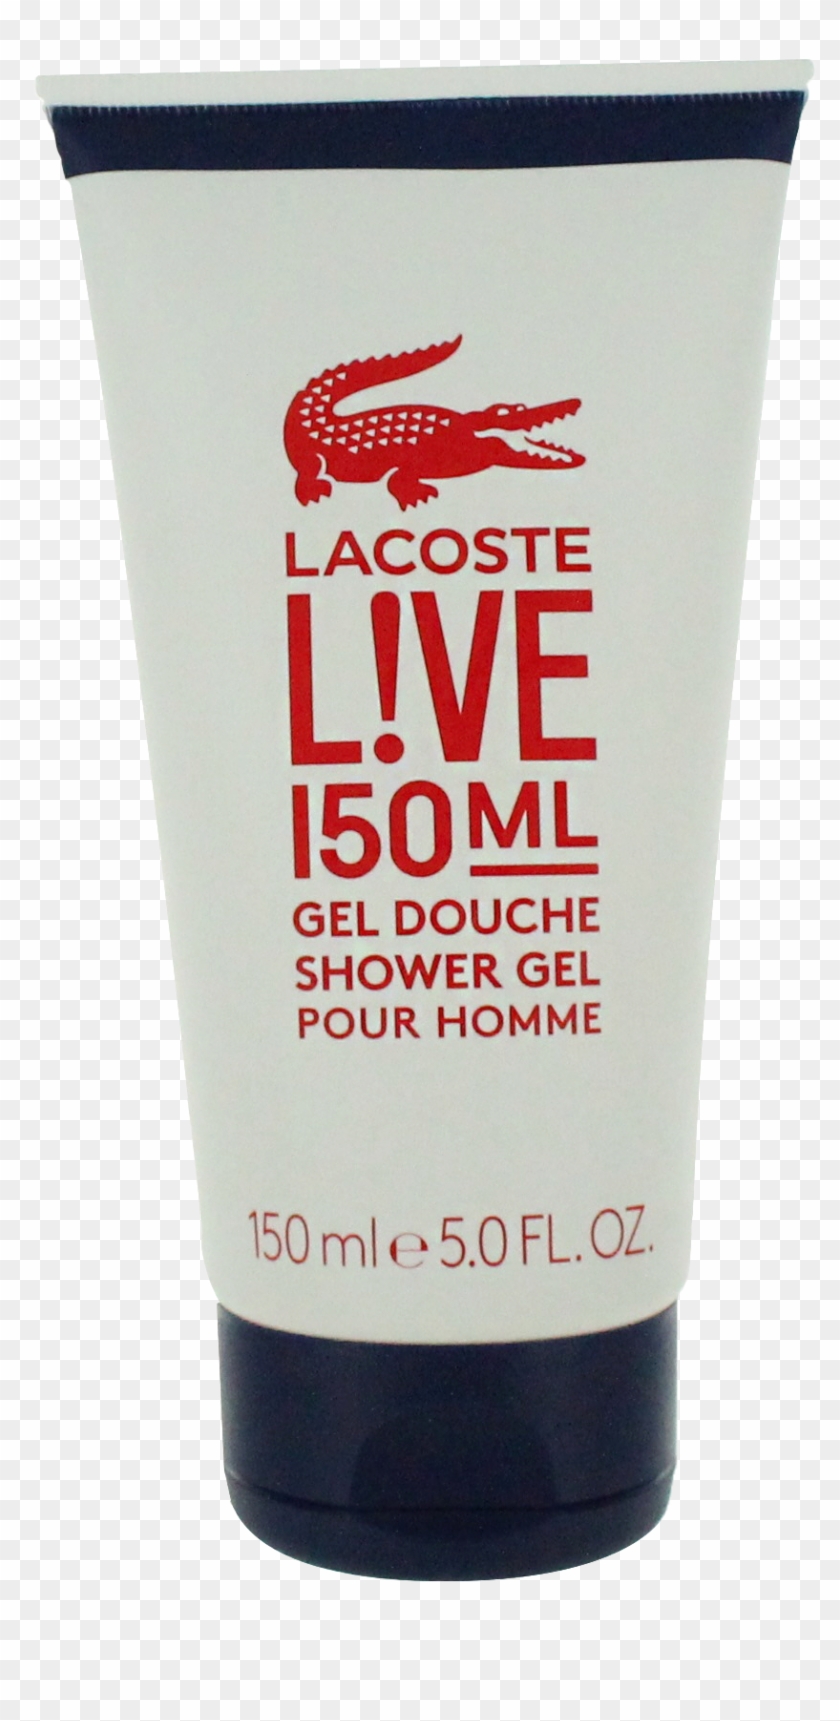 L Ve Pour Homme By Lacoste For Men Shower Gel 5oz - Cosmetics Clipart #3928229